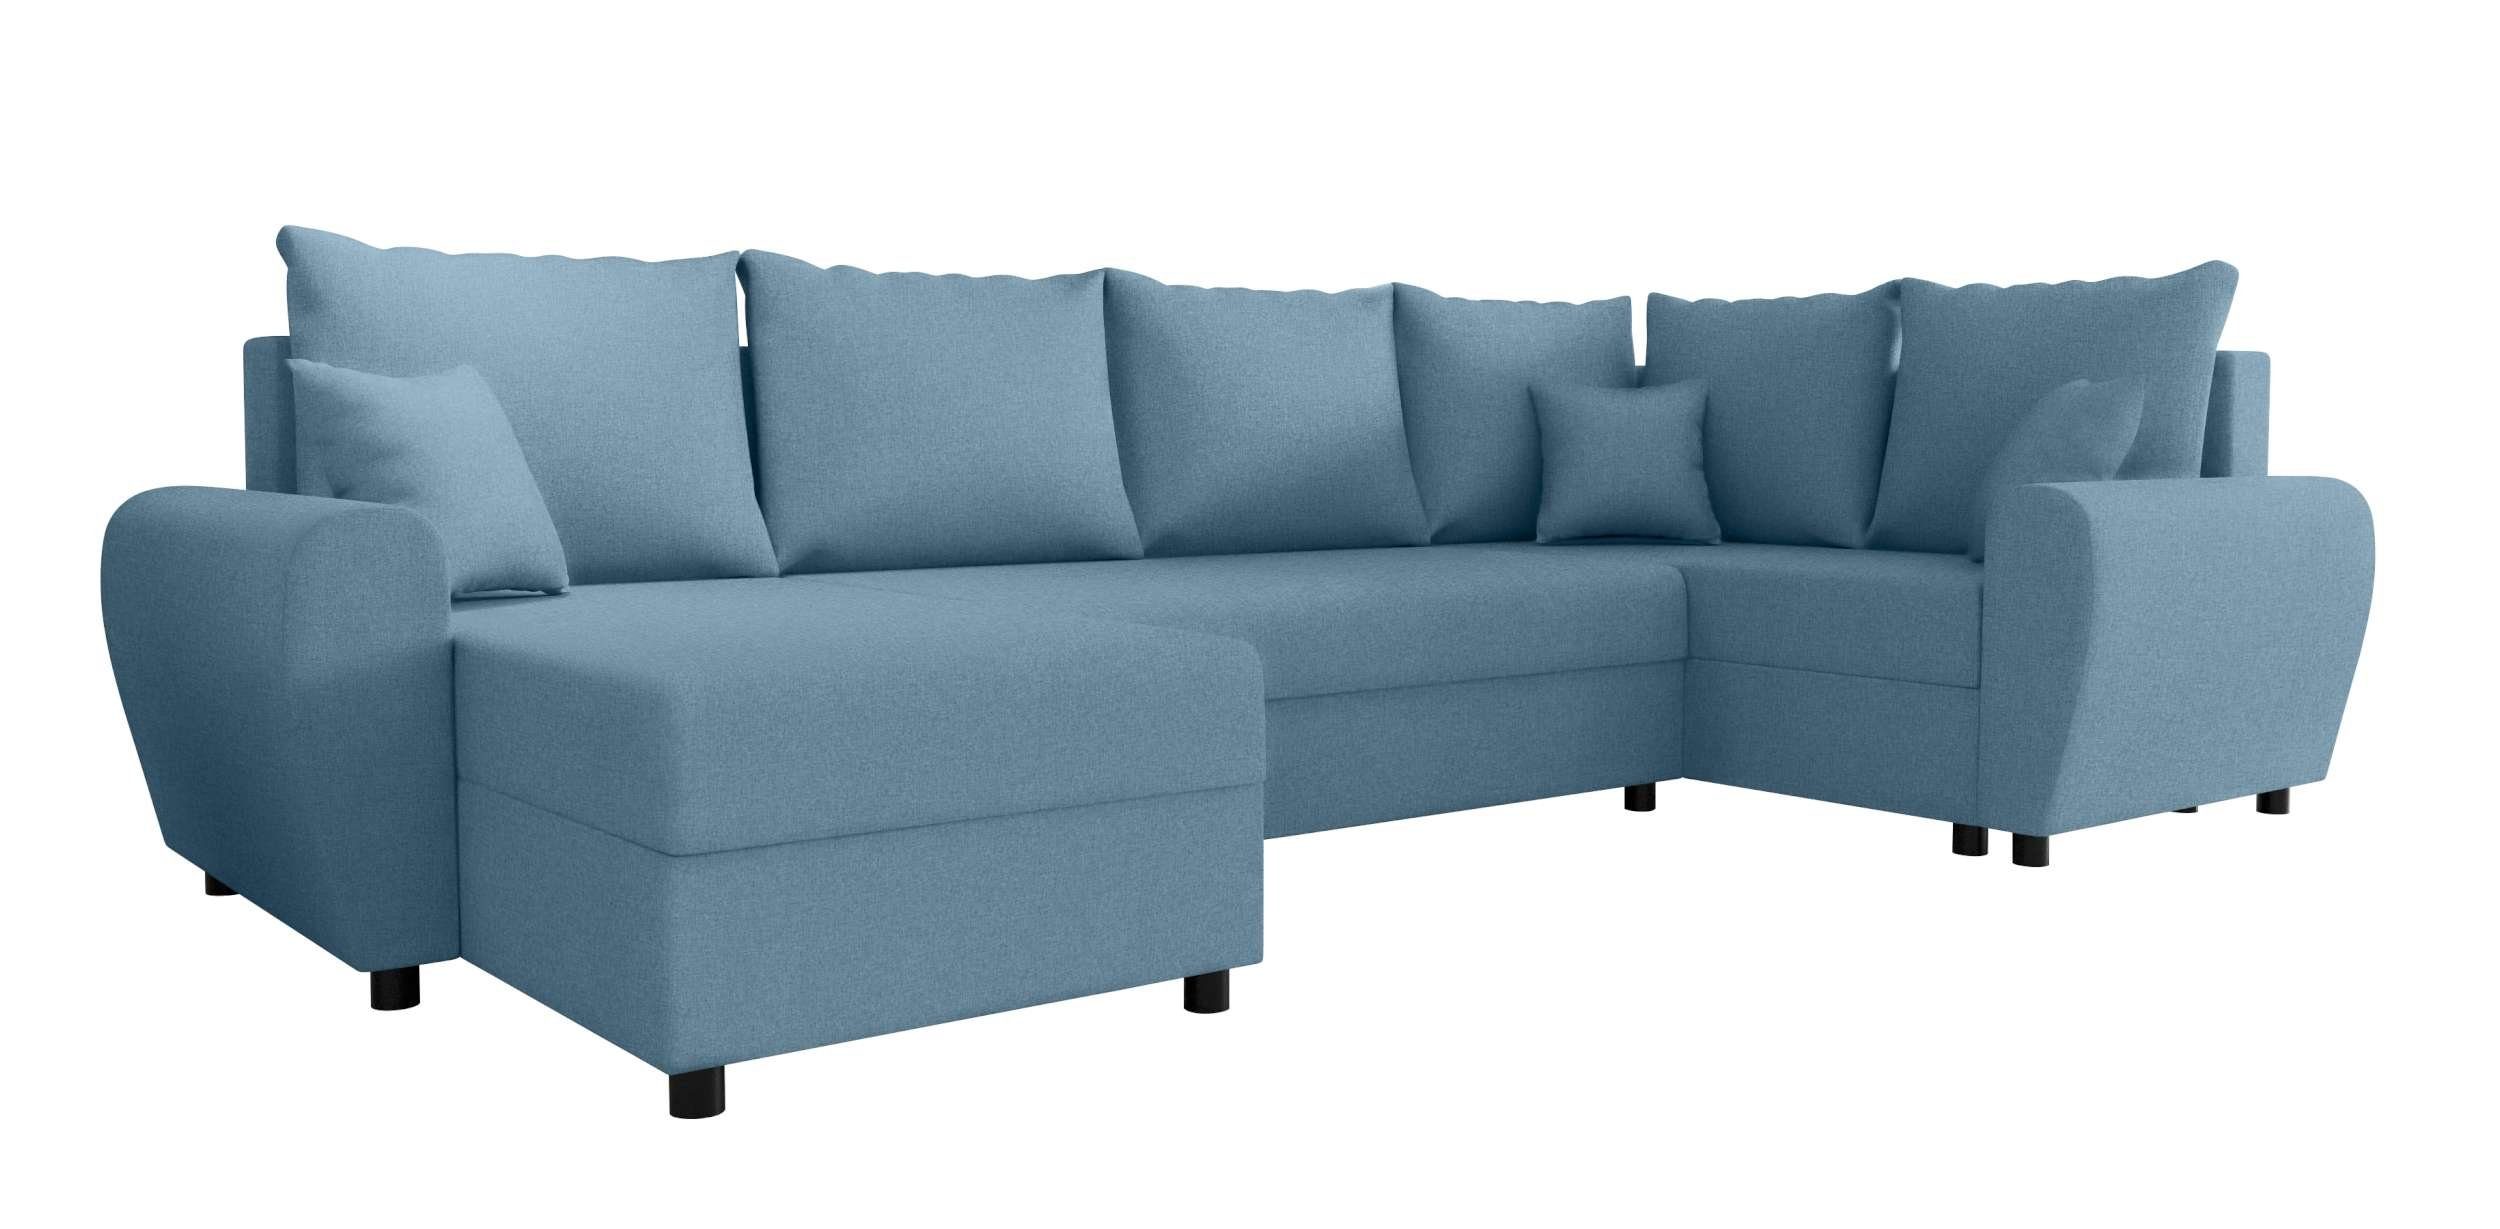 Eckcouch, Stylefy Haven, Sofa, Bettkasten, Bettfunktion, U-Form, mit Design Sitzkomfort, mit Modern Wohnlandschaft